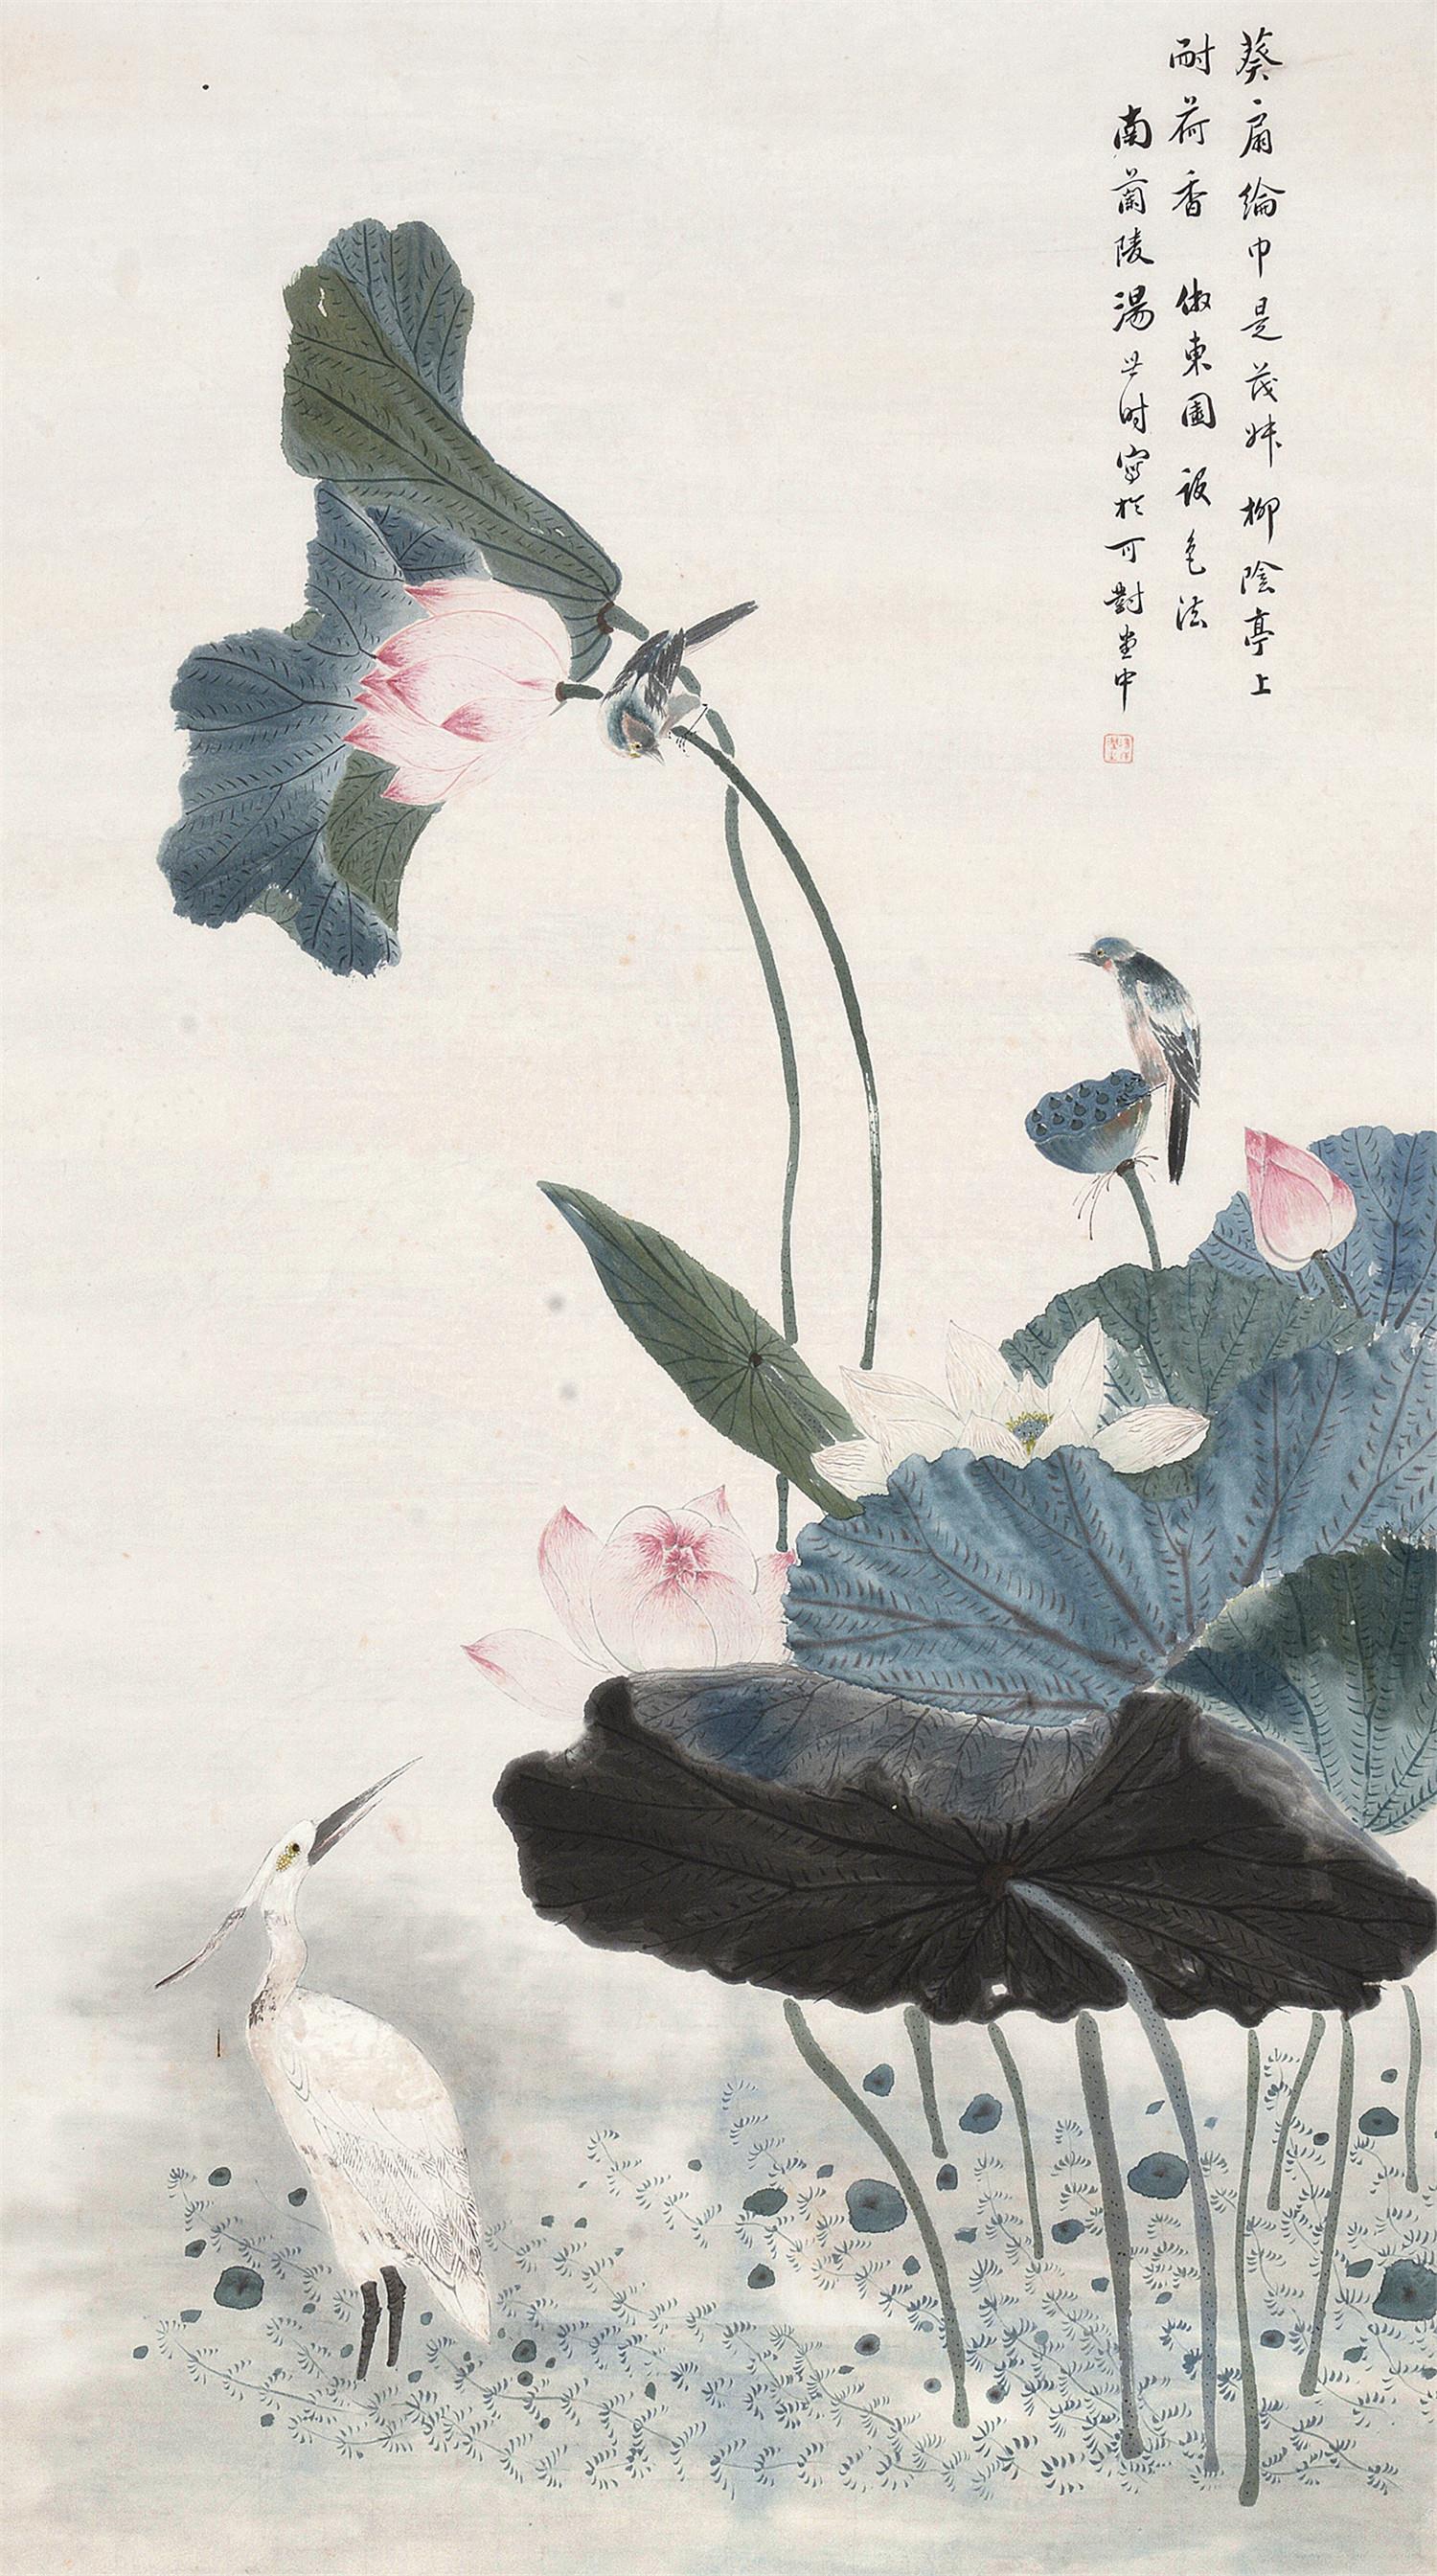 中国书画 lot 0160  分享 拍品描述 立轴    设色纸本;钤印:汤世澍玺